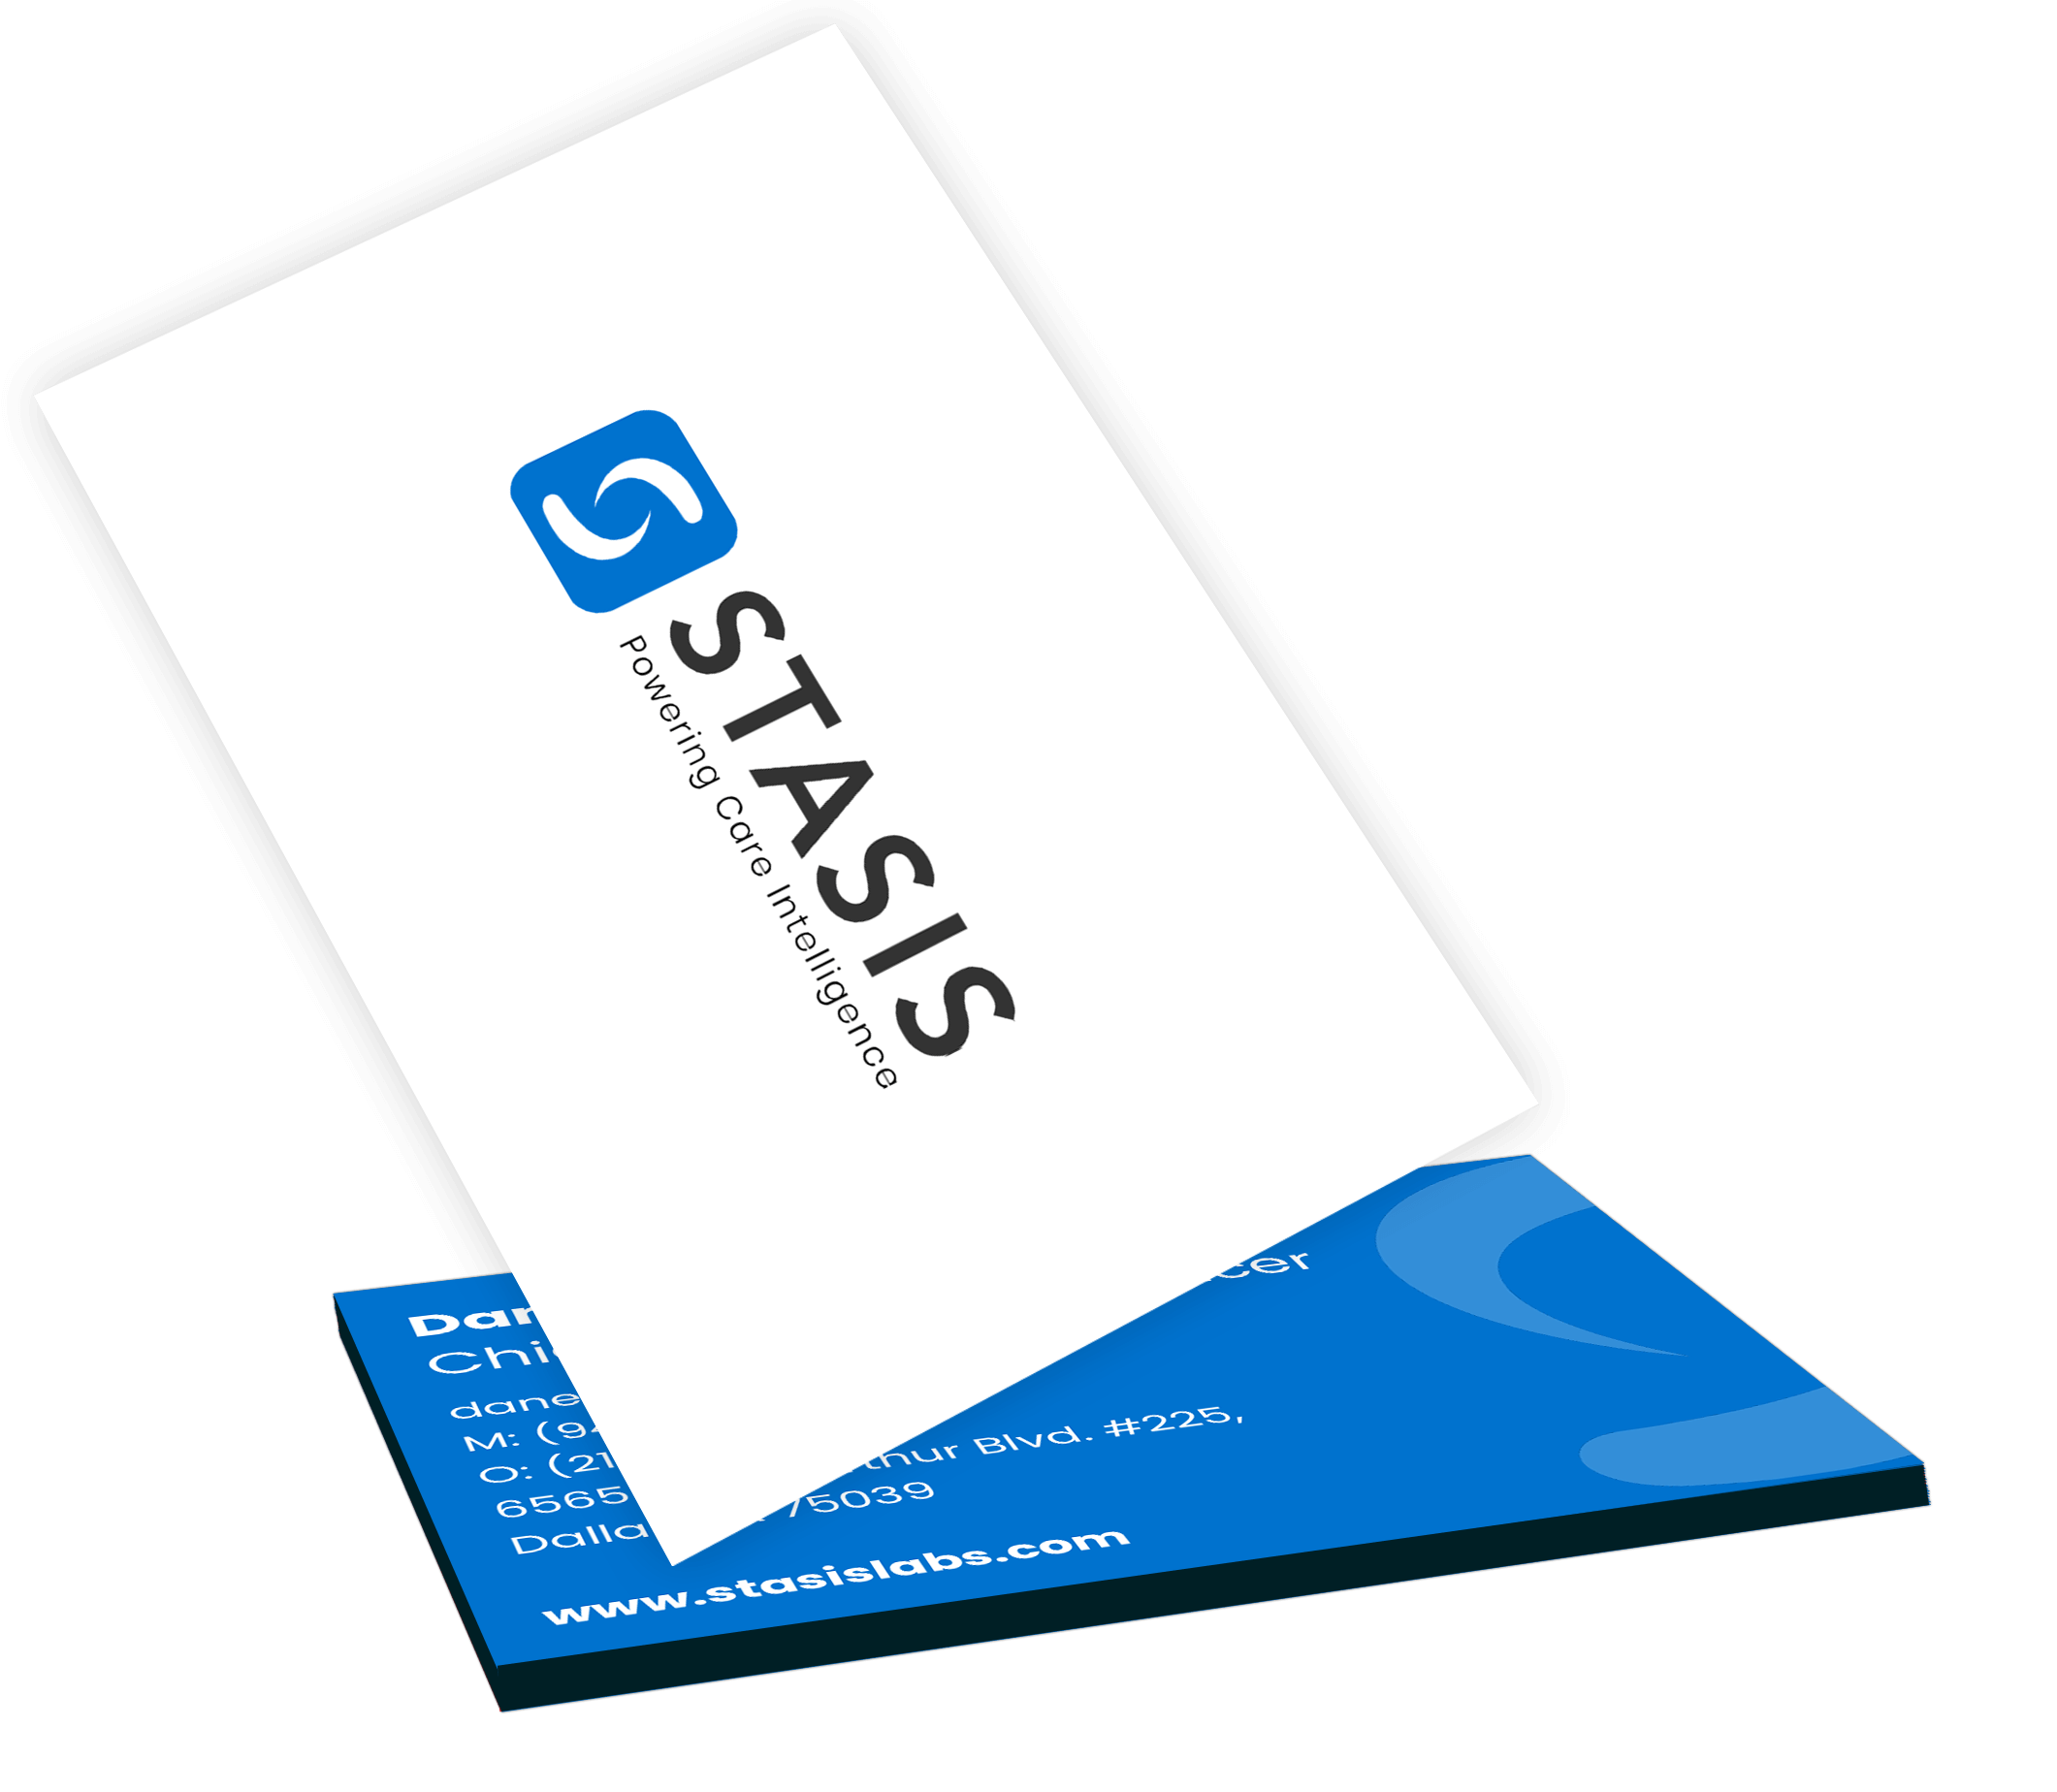 Stasis Business Card Mockup